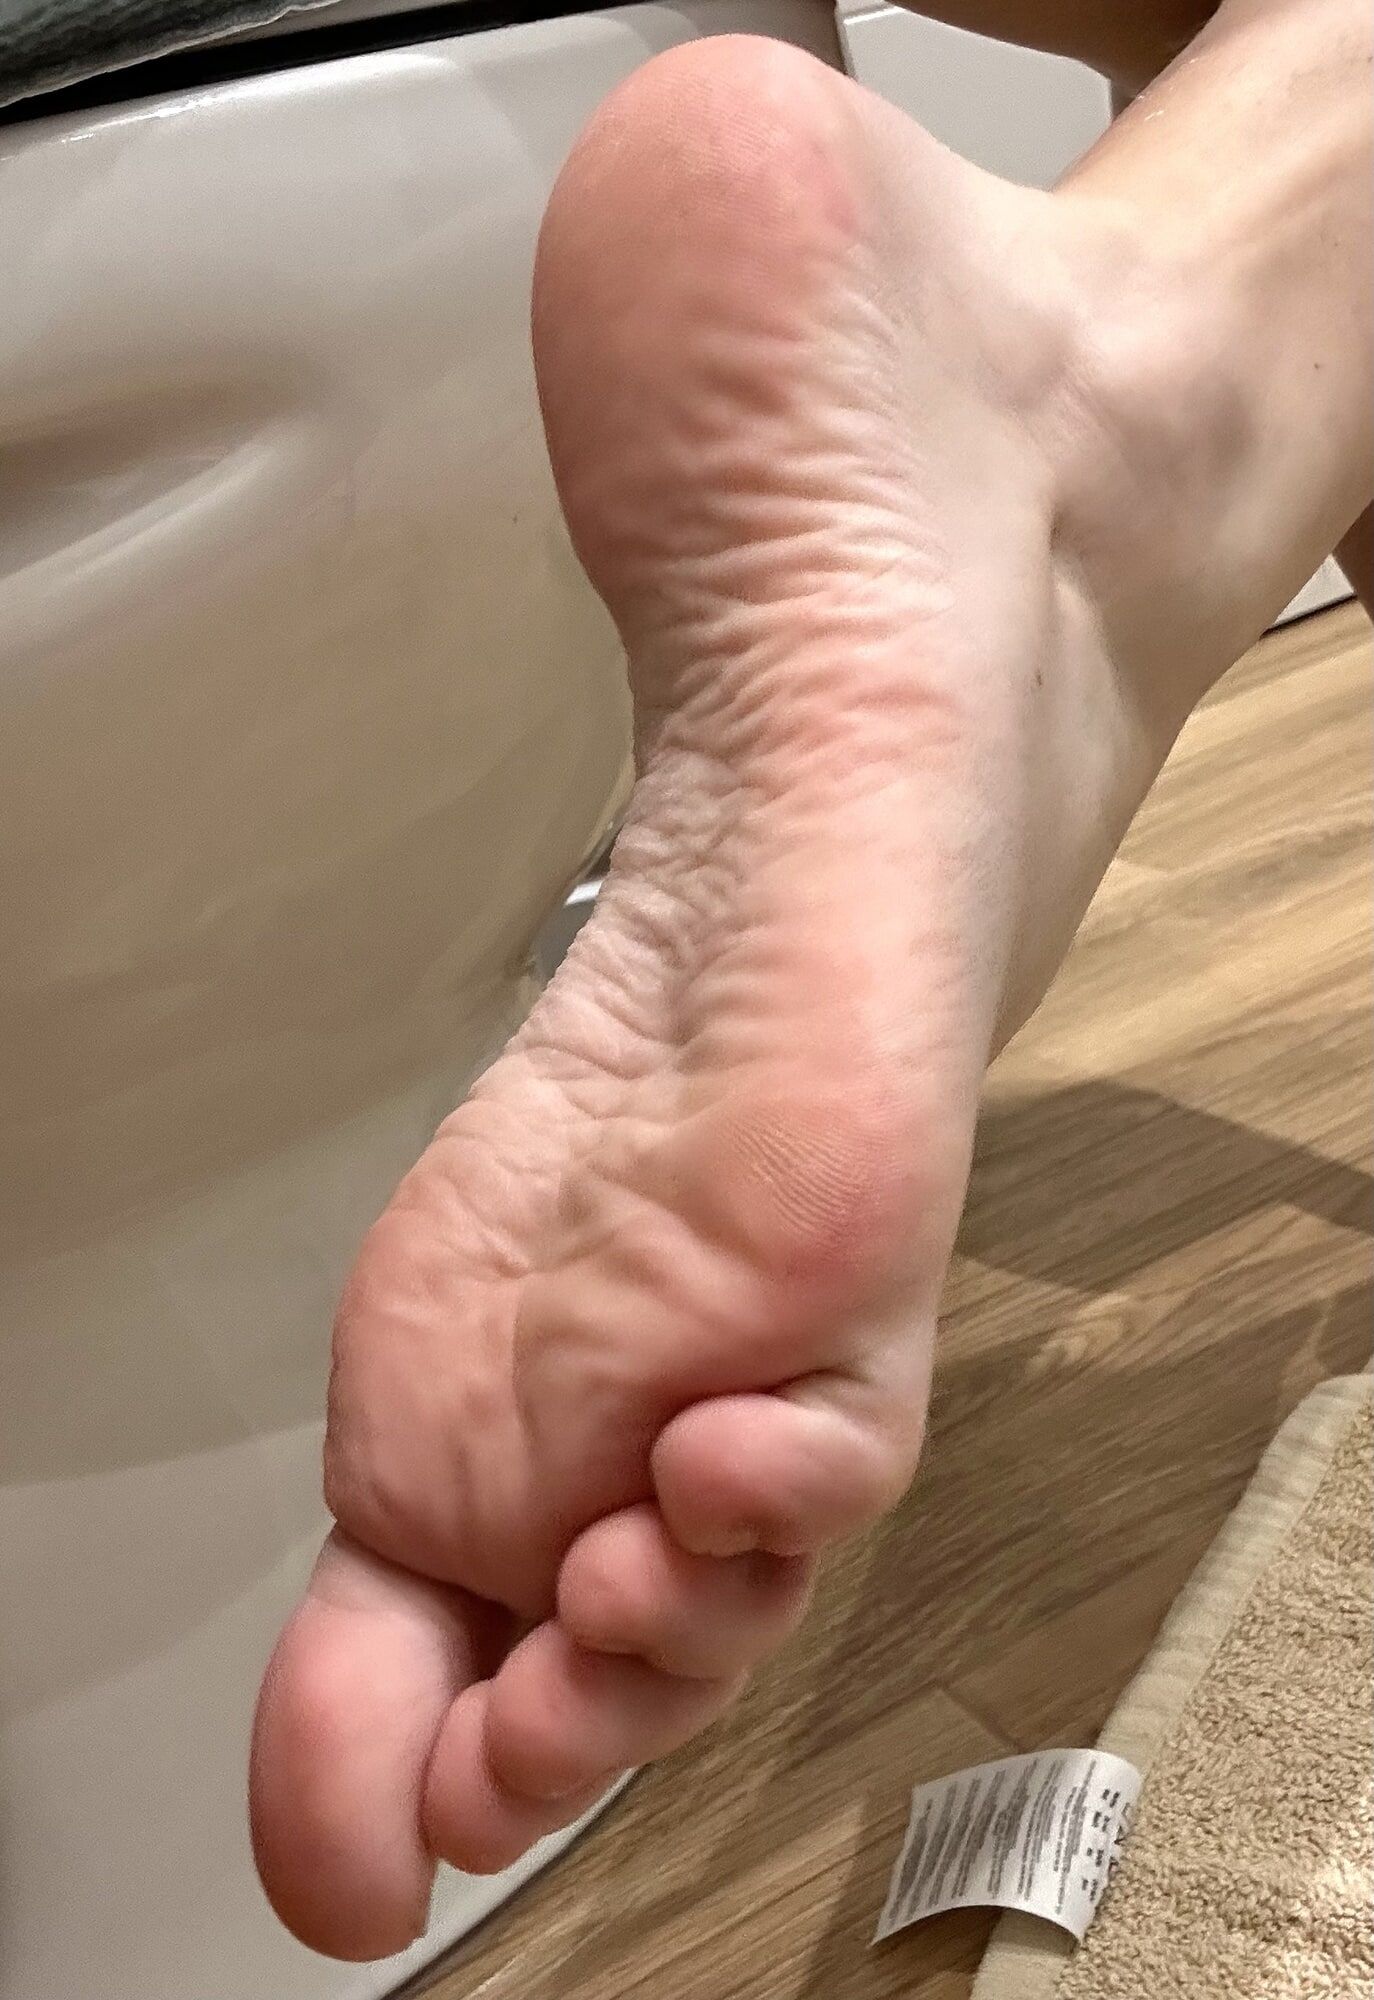 Little feet